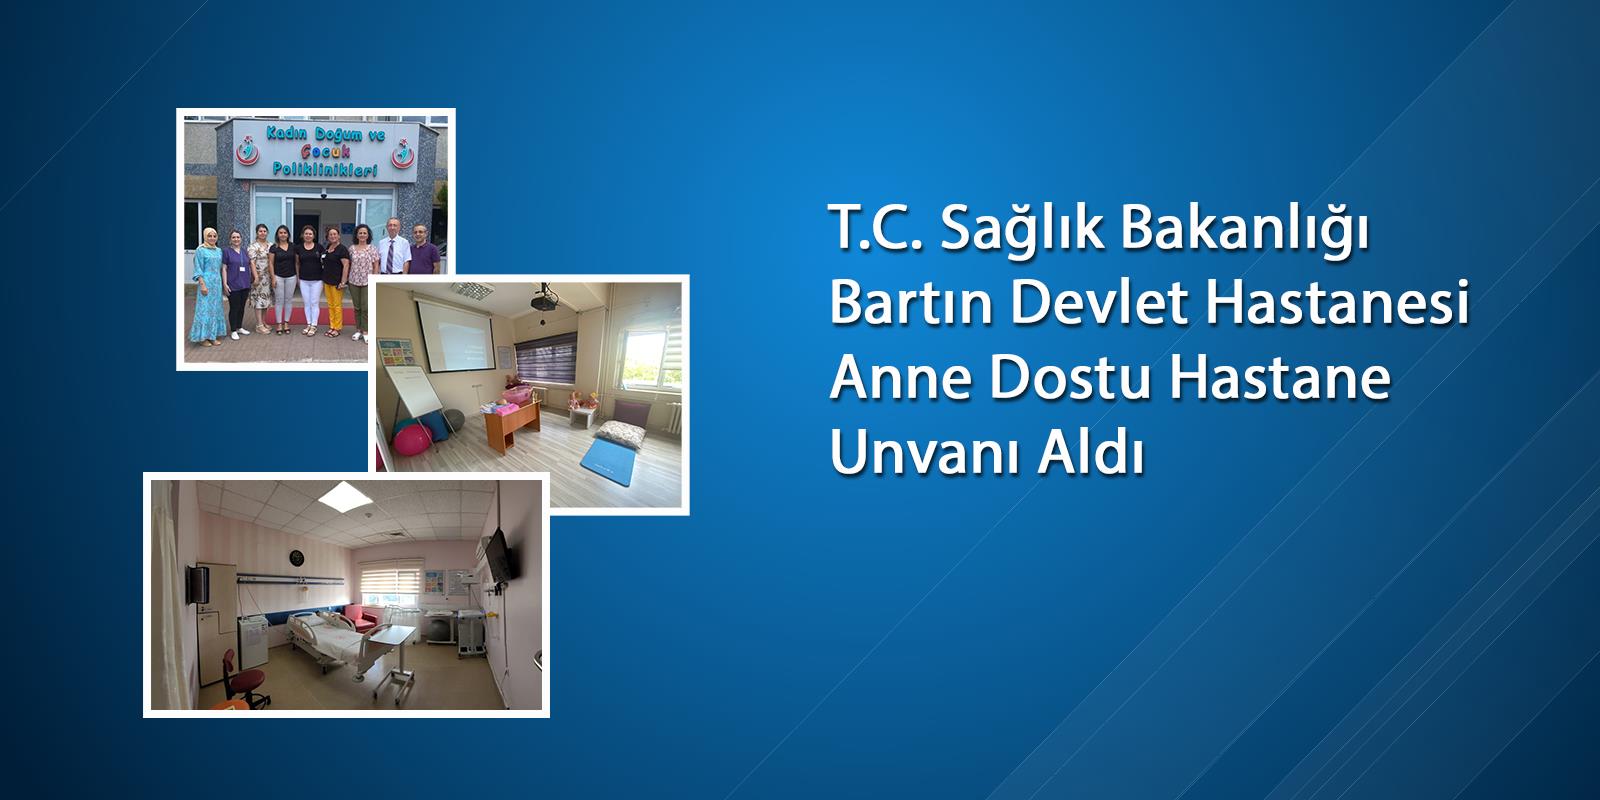 T.C. Sağlık Bakanlığı Bartın Devlet Hastanesi Anne Dostu Hastane Unvanı Aldı